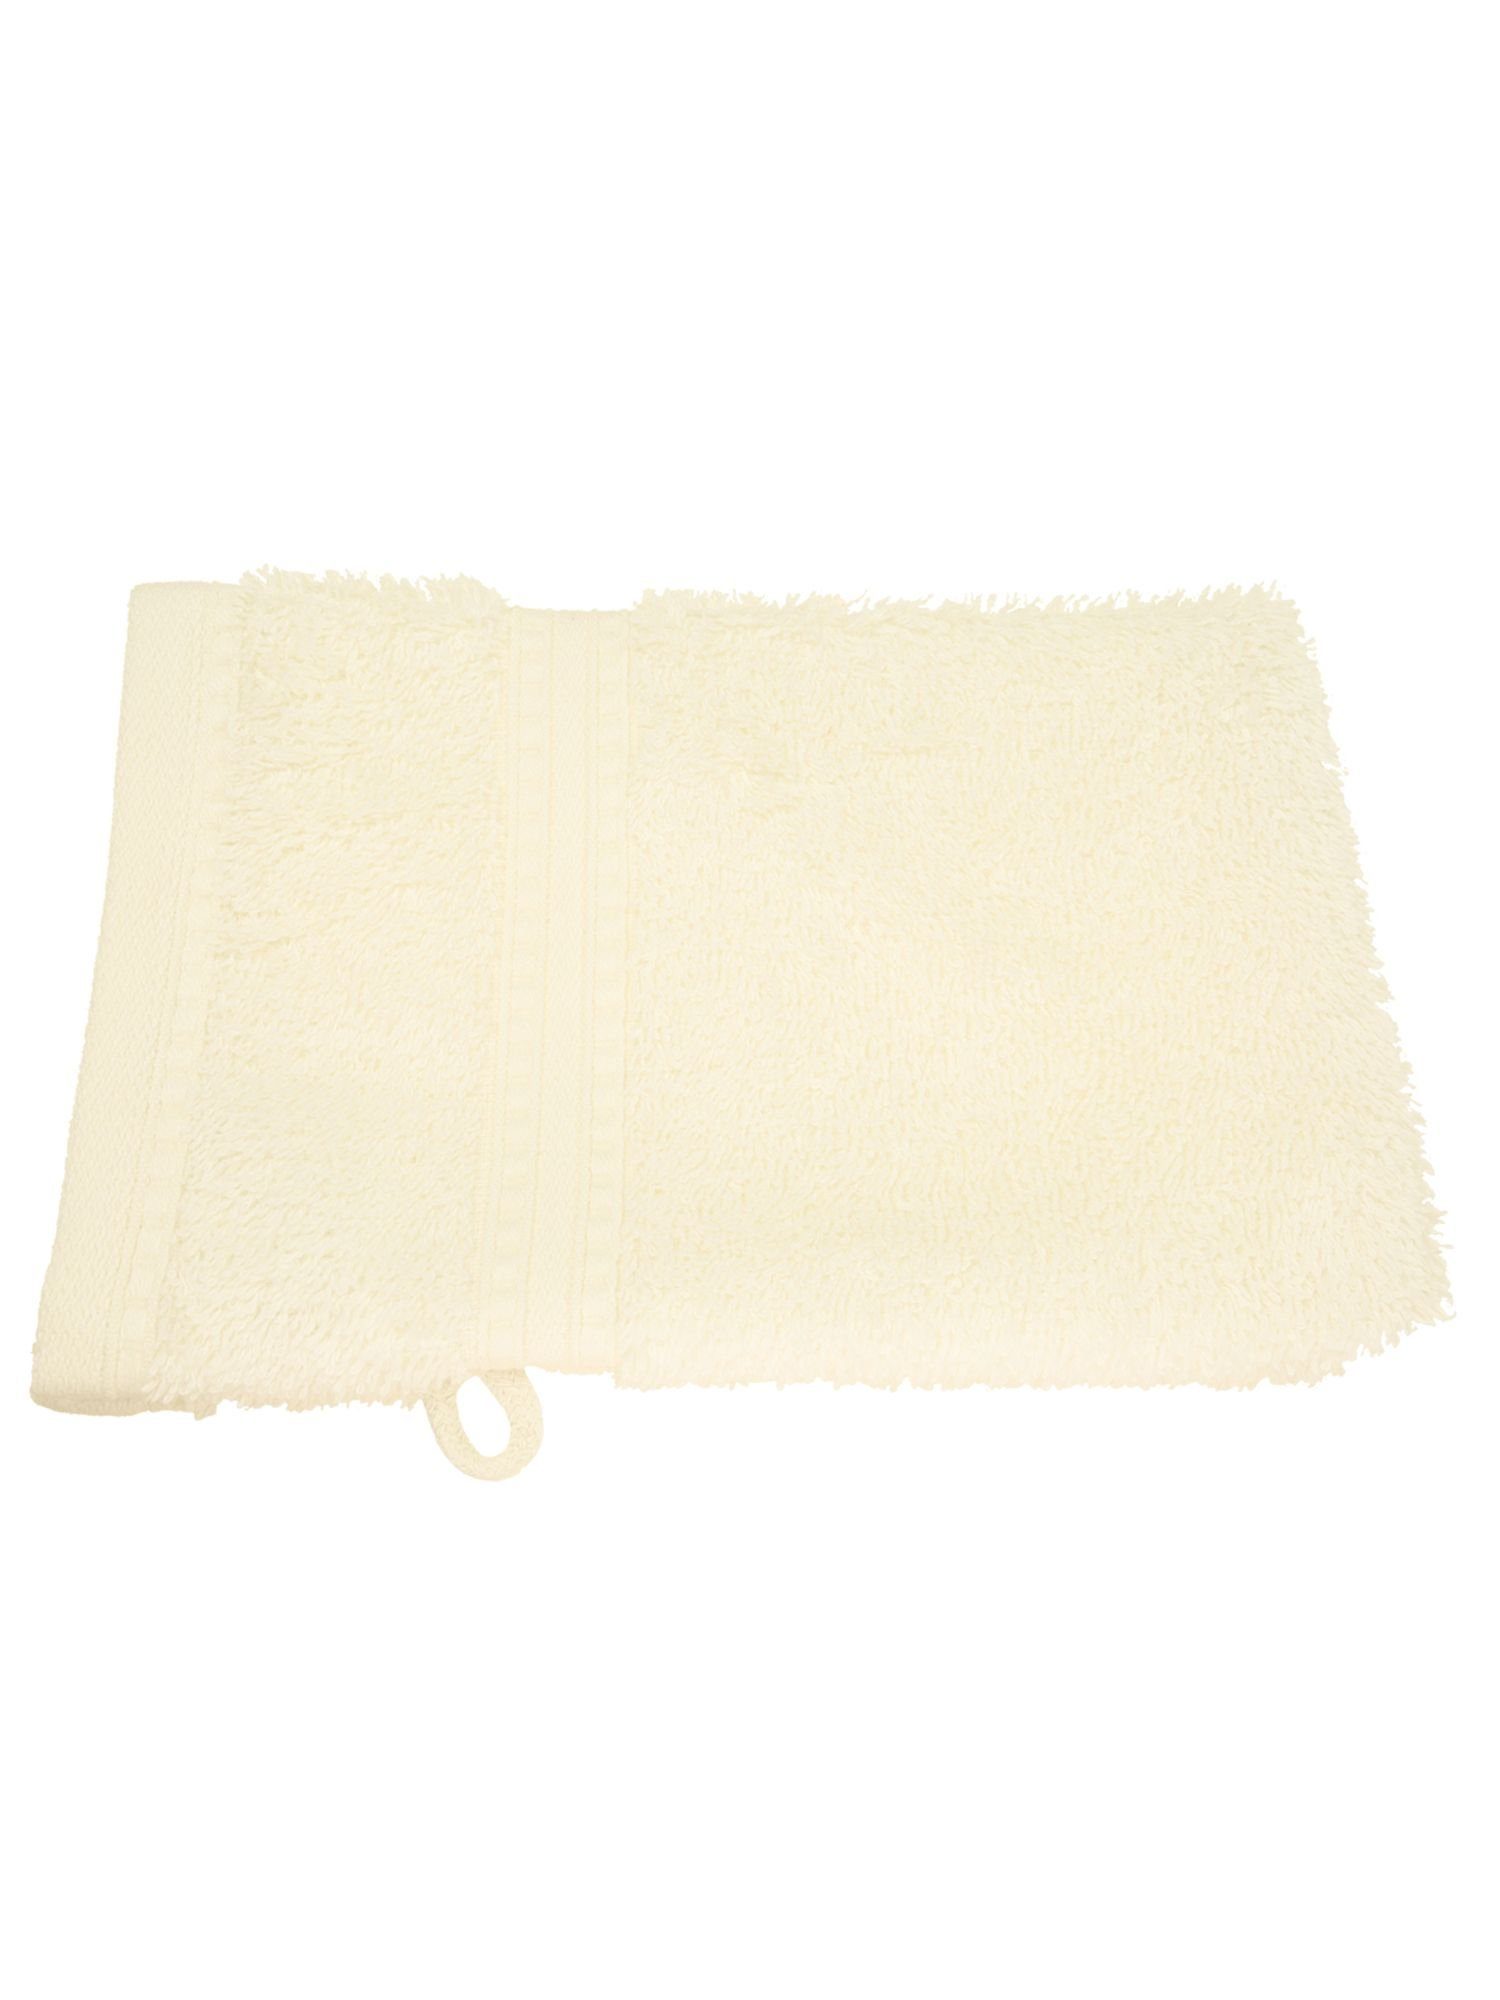 Julie Julsen Handtuch 1-Handtuch-Naturweiß-Waschhandschuh 15 x 21 cm, Bio-Baumwolle (1-St)